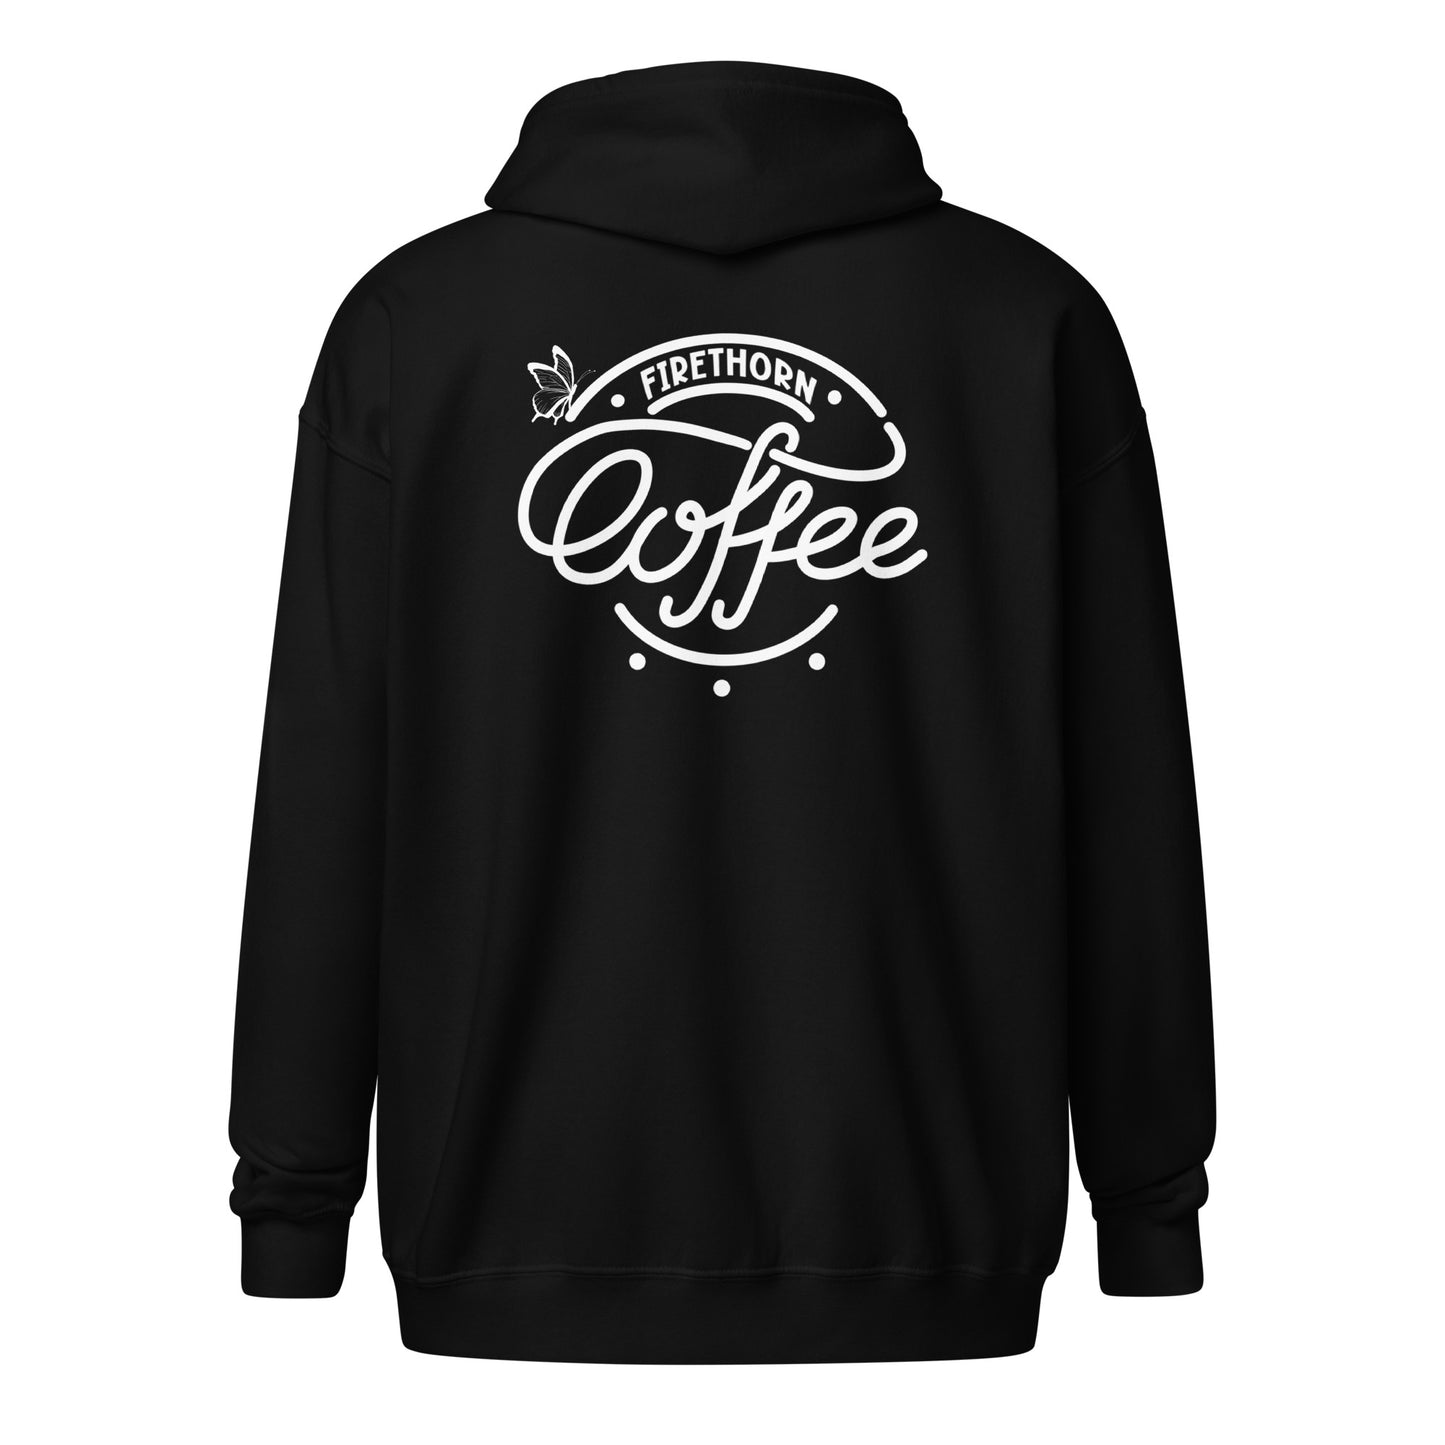 Firethorn Coffee zip hoodie